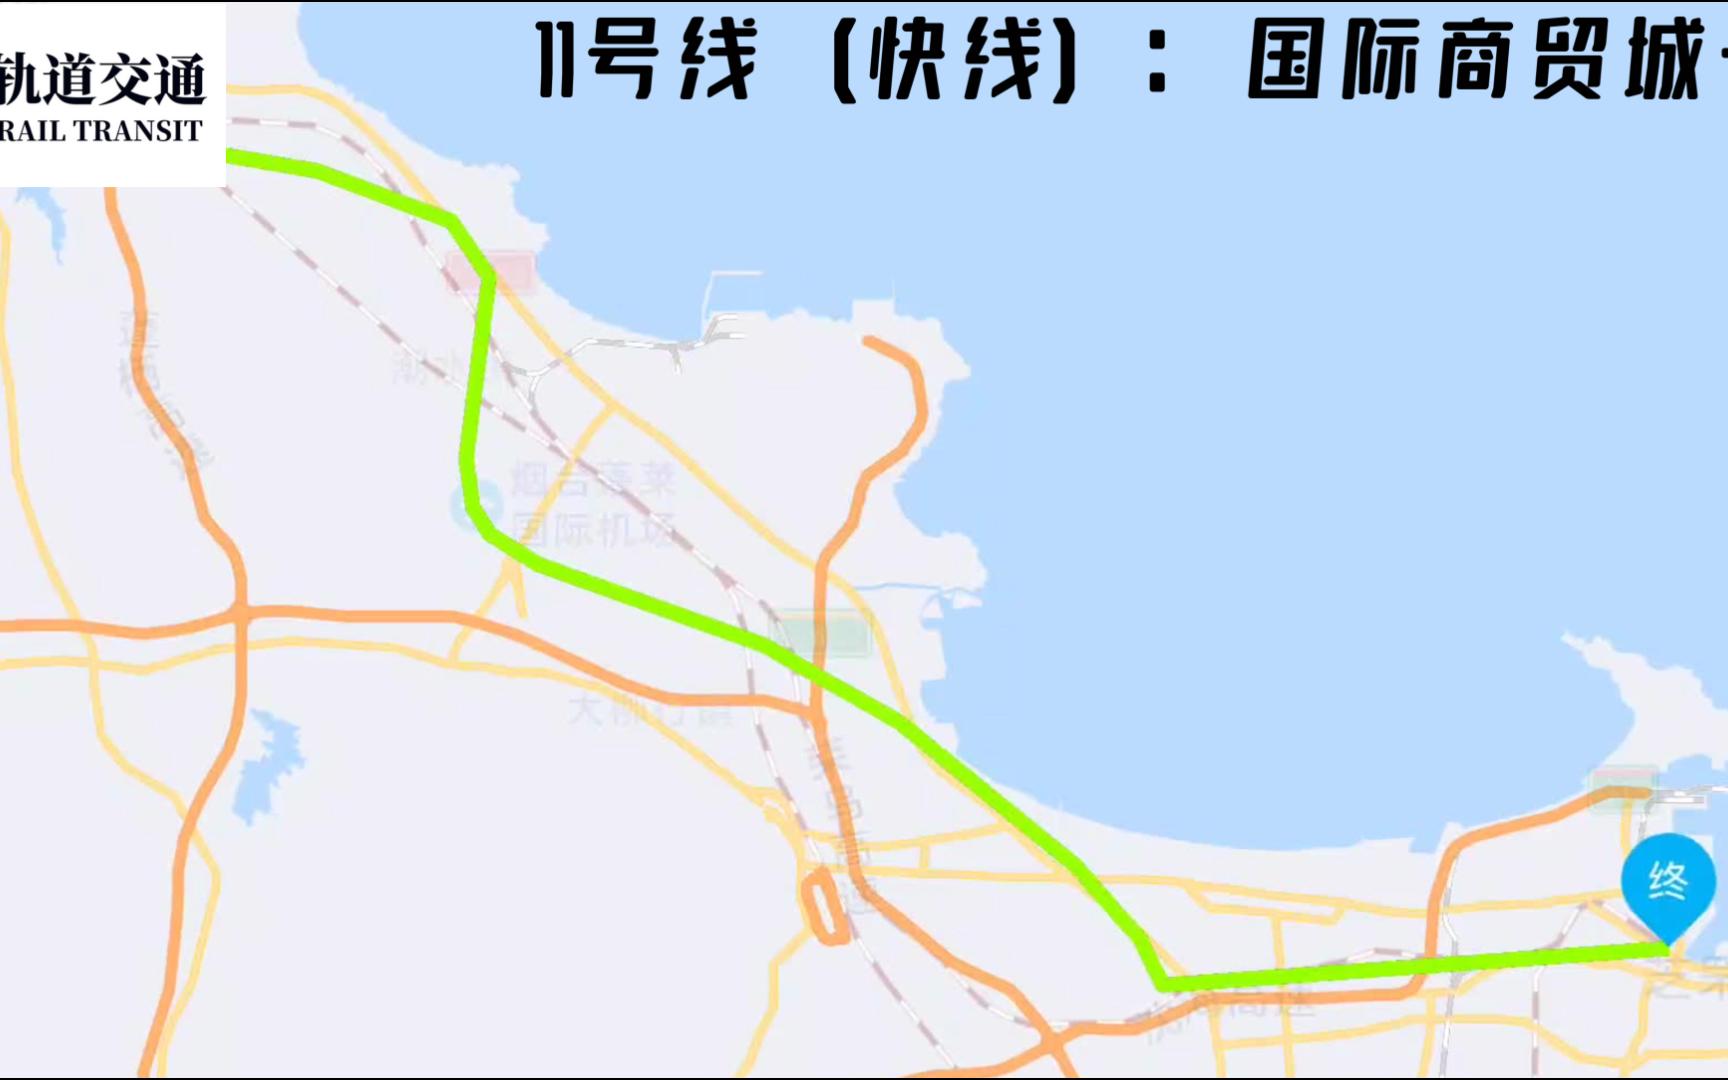 【自制规划】烟台地铁11号线(快线):国际商贸城